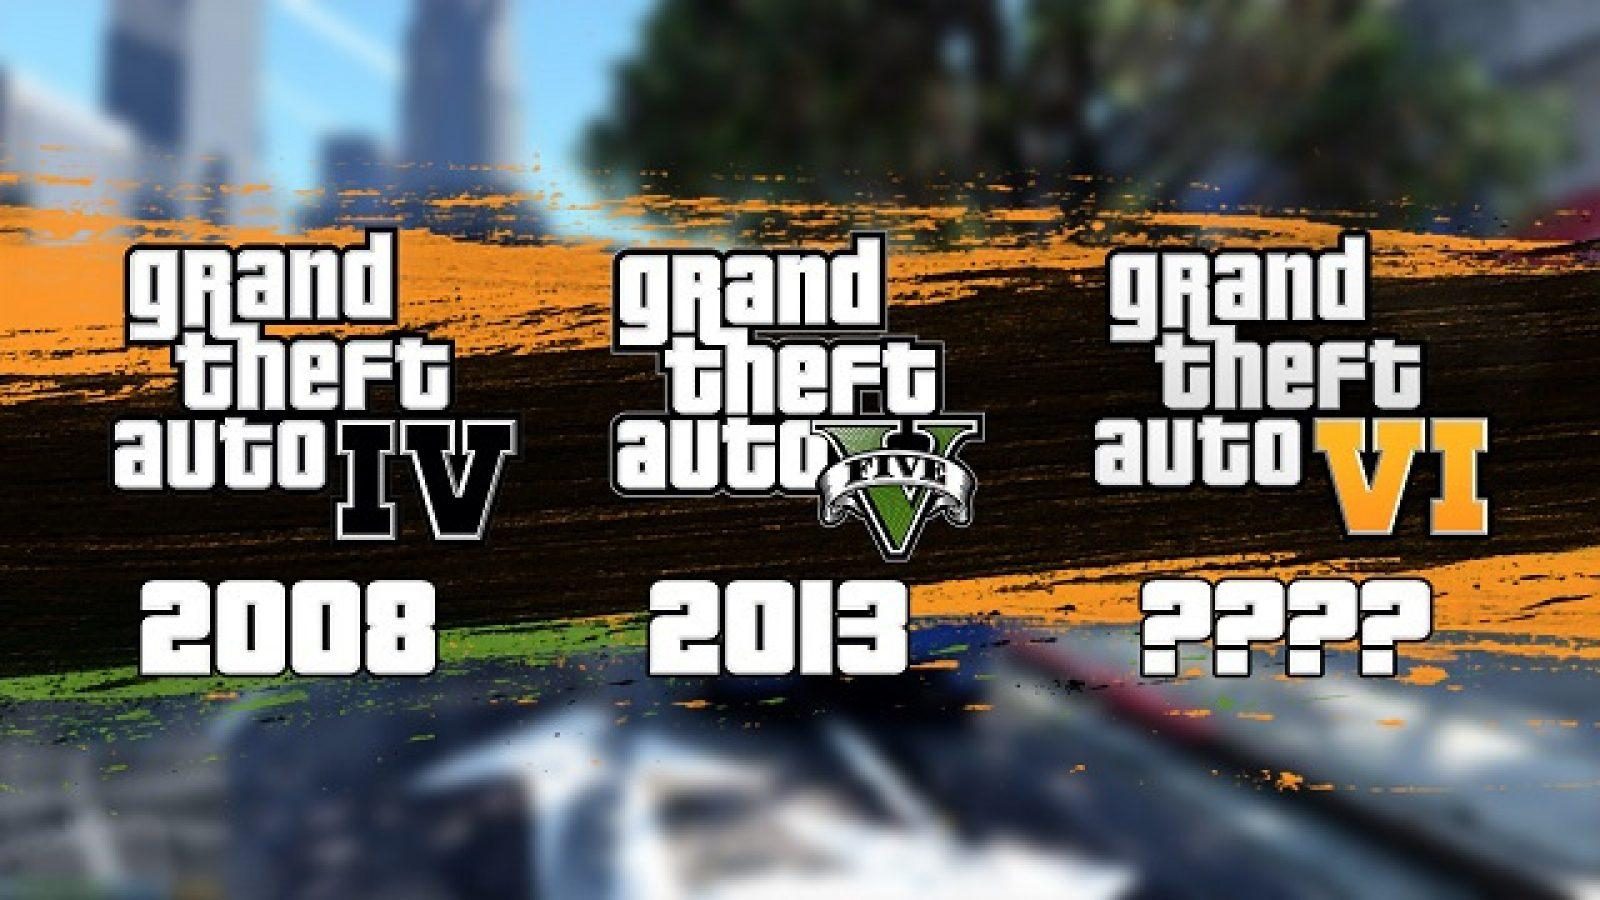 Date De Sortie Gta 6 Sur Ps3 Quand GTA 6 sera-t-il publié ? Comparaison des Grand Theft Auto précédents  - Dexerto.fr